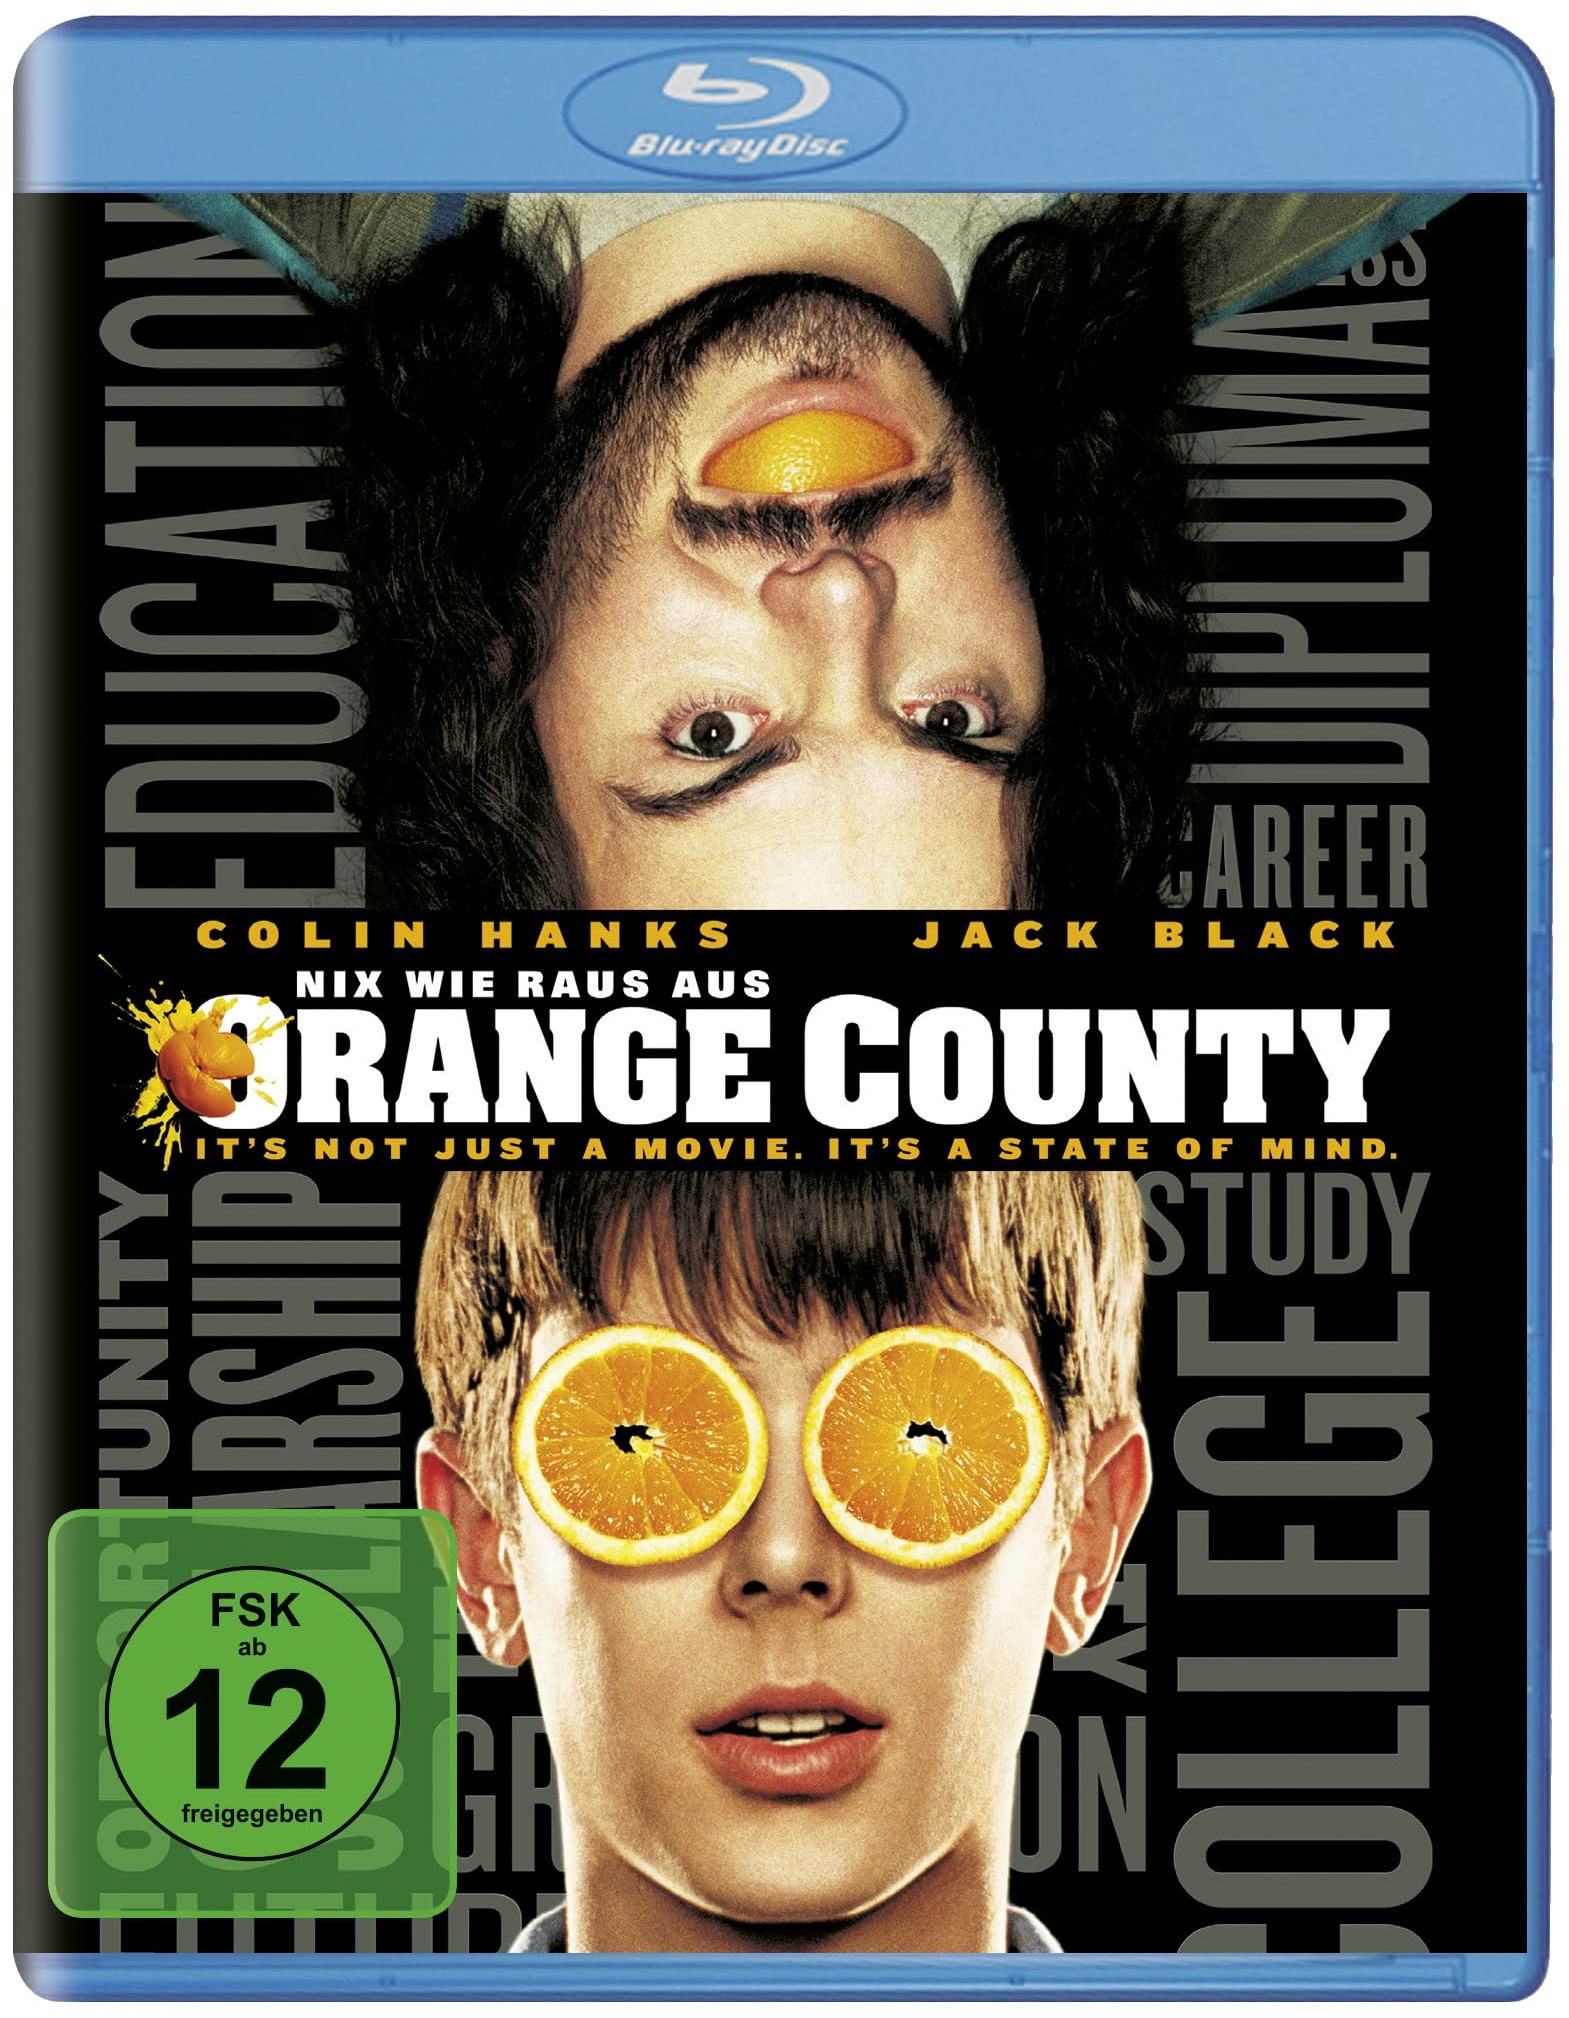 Nix wie raus aus Orange County [Blu-ray] (Neu differenzbesteuert)